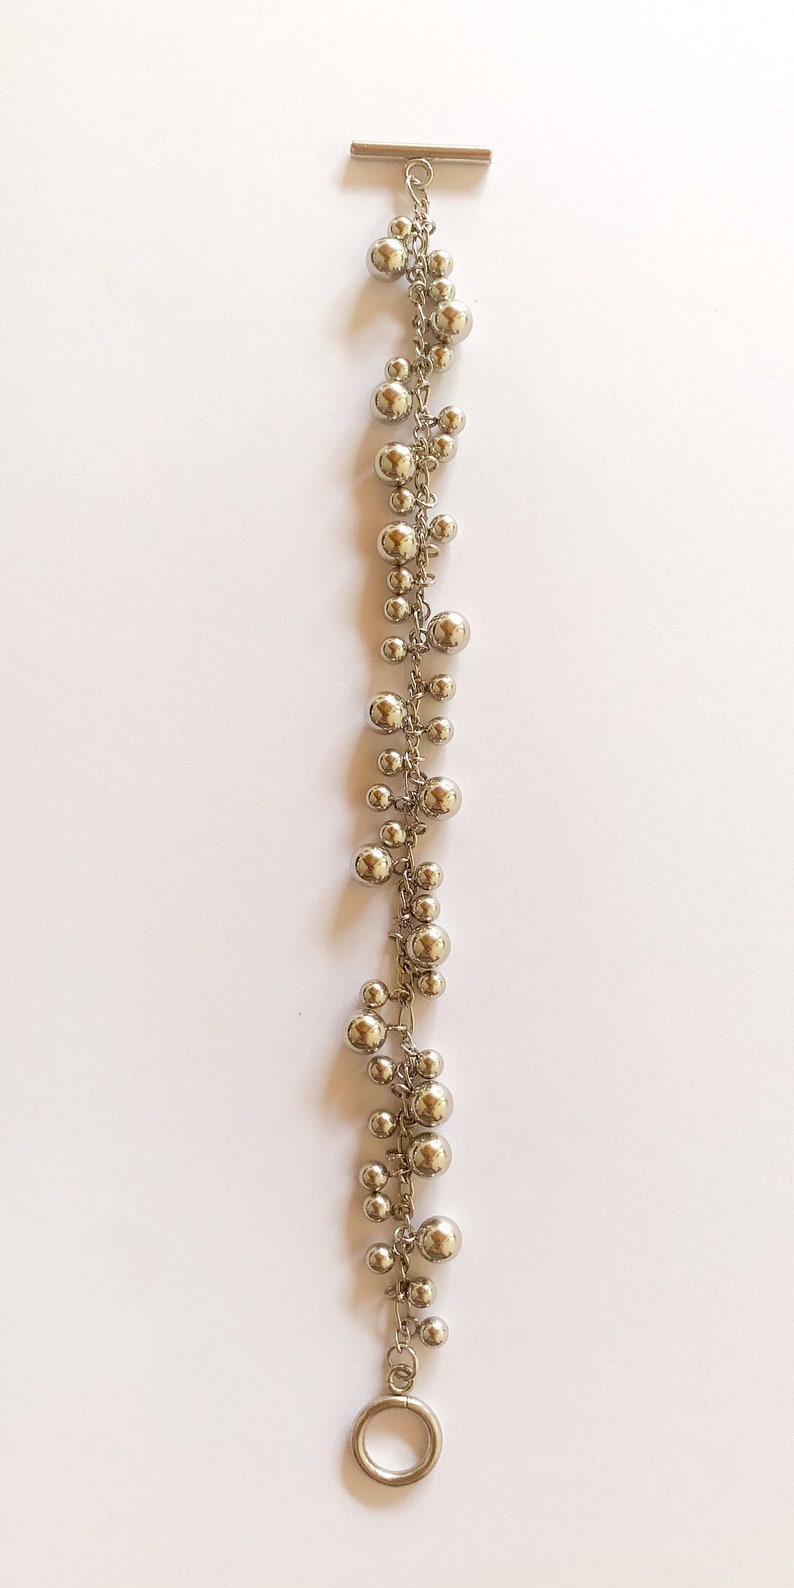 Bracelet breloques billes boules argent bracelet avec multiples pendentifs billes esprit bohème ethnique bracelet chaîne argent image 7